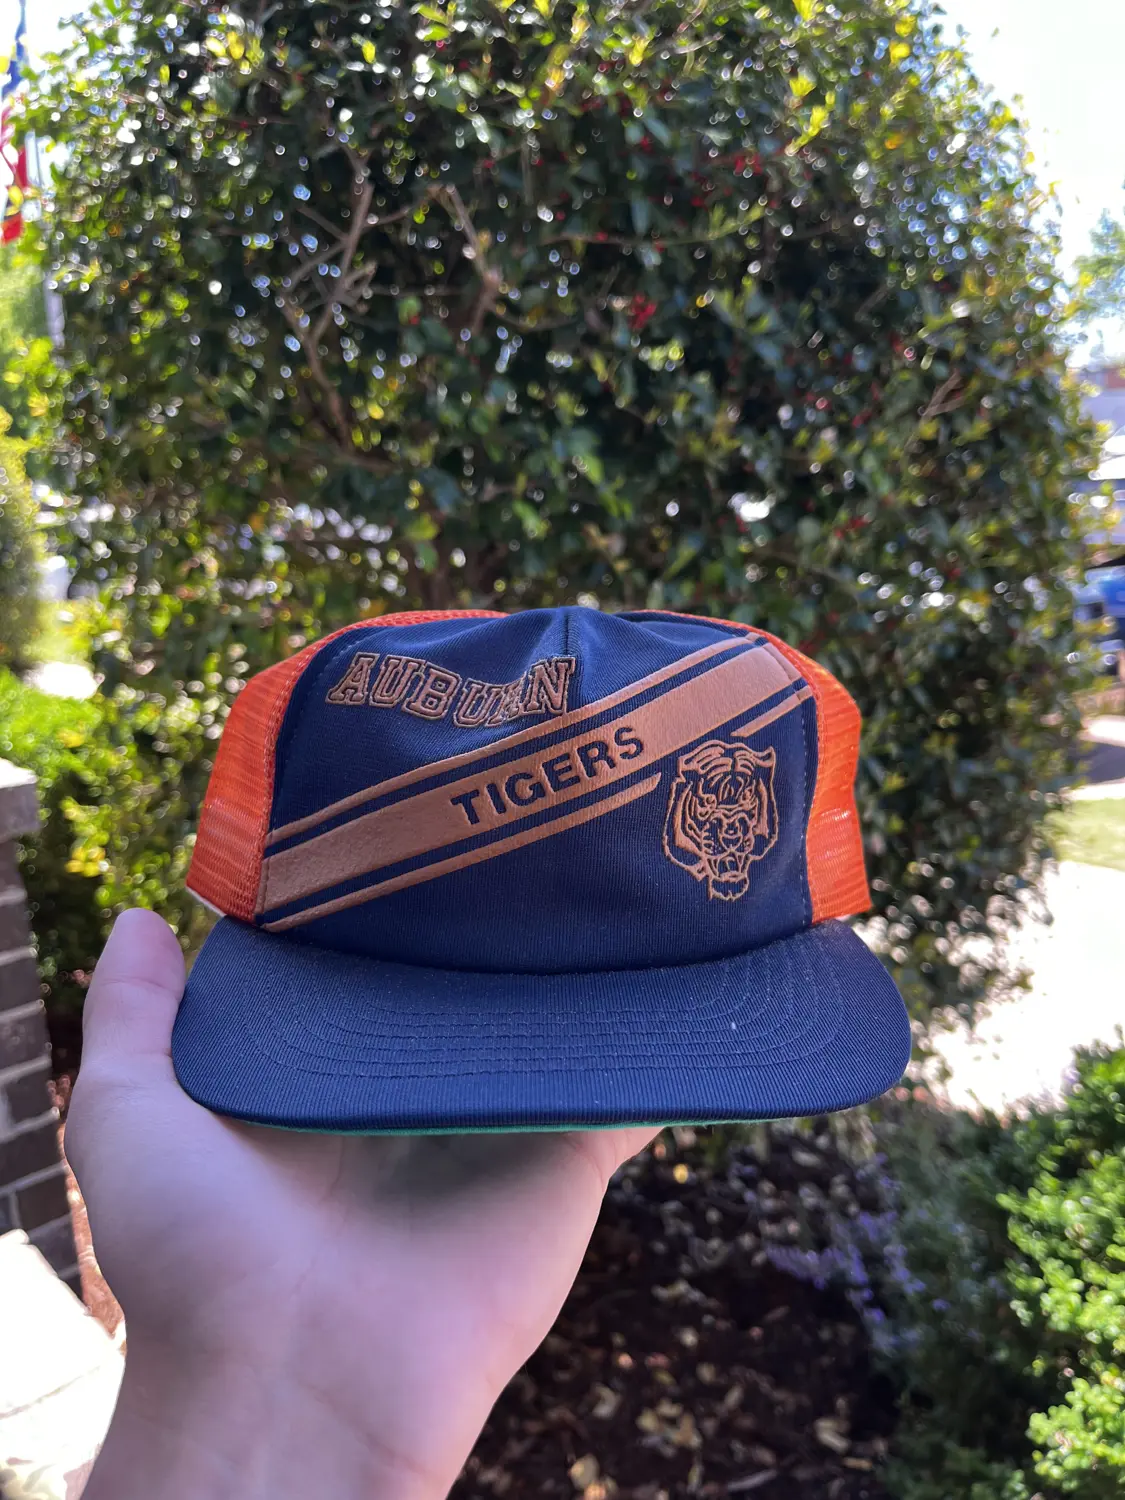 Auburn tigers hat